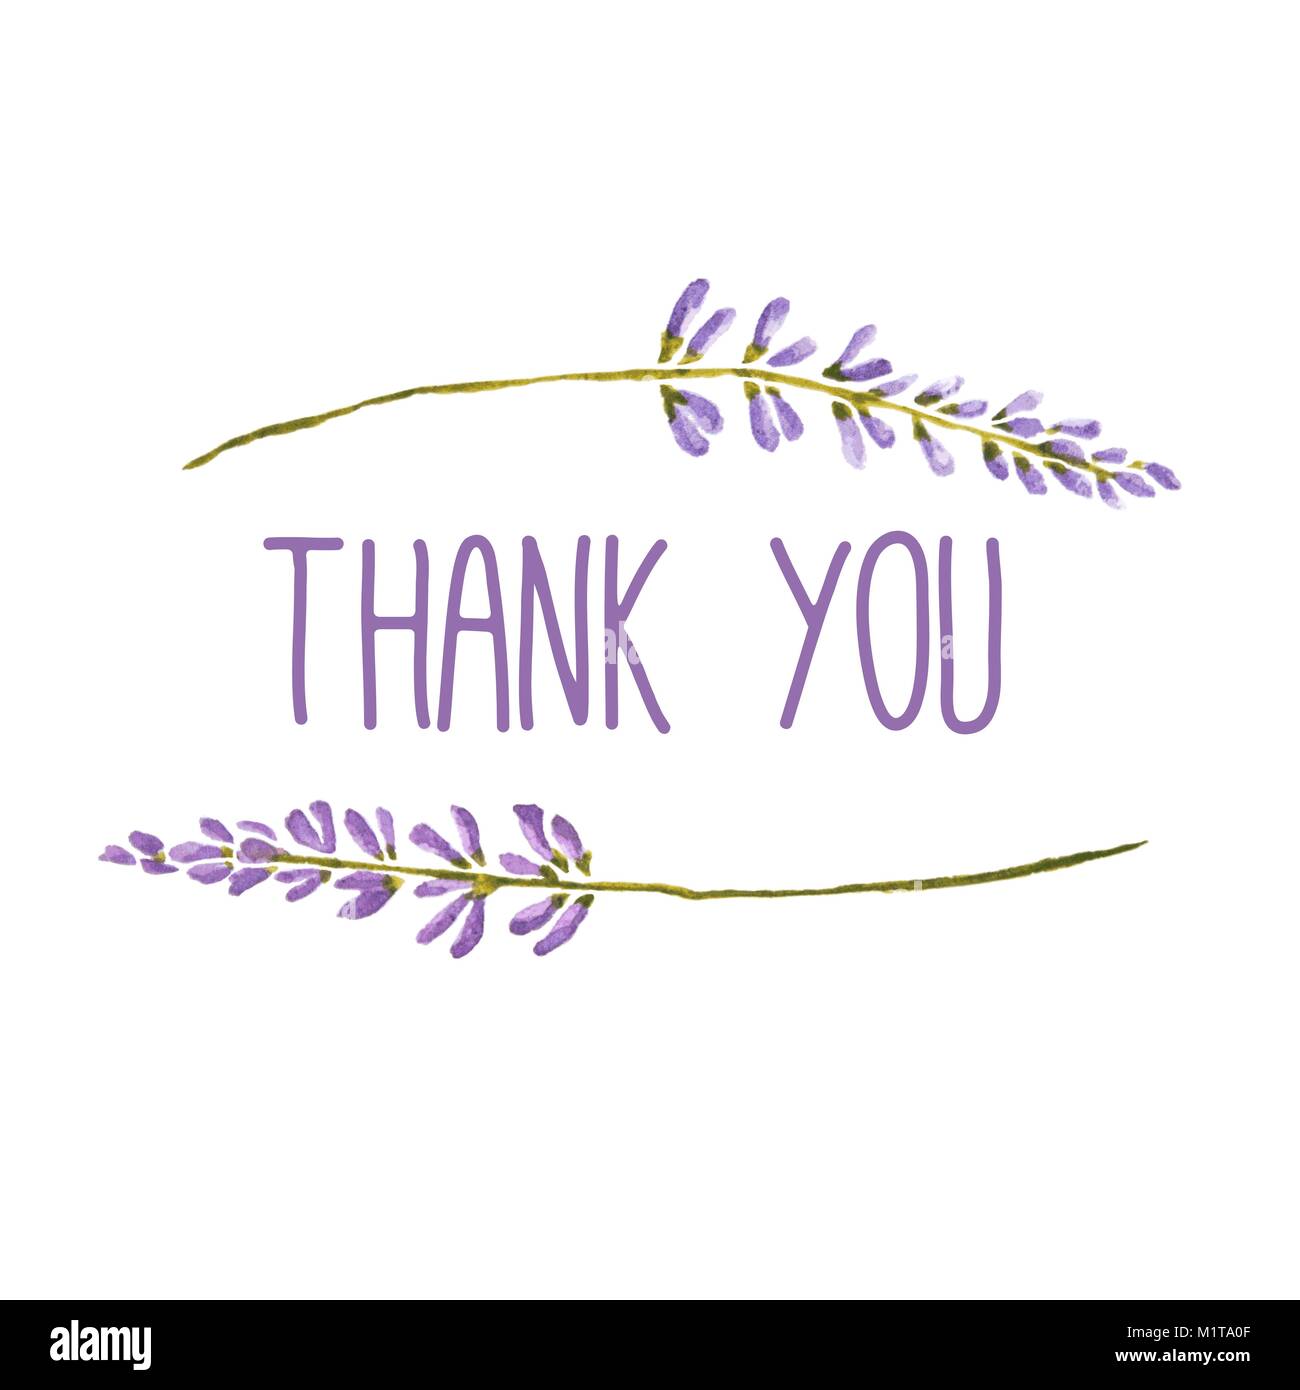 Vektor aquarell Grußkarte mit Worten danken Ihnen von Blüten von Lavendel eingerahmt. Stock Vektor